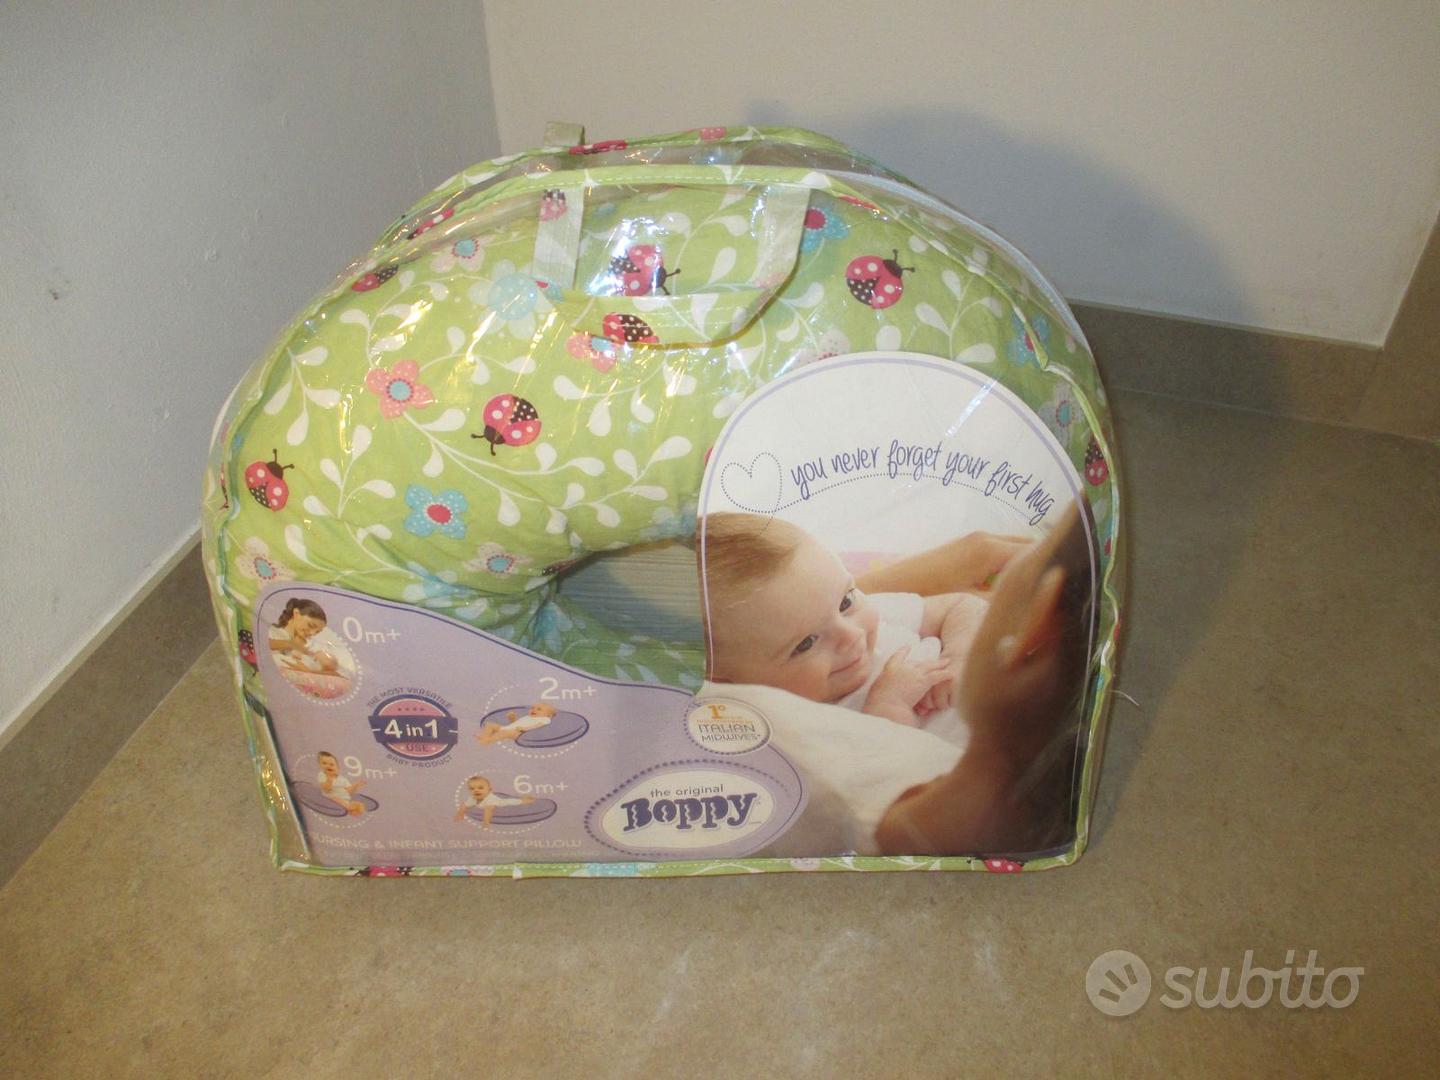 Cuscino antisoffoco neonato - Tutto per i bambini In vendita a Padova